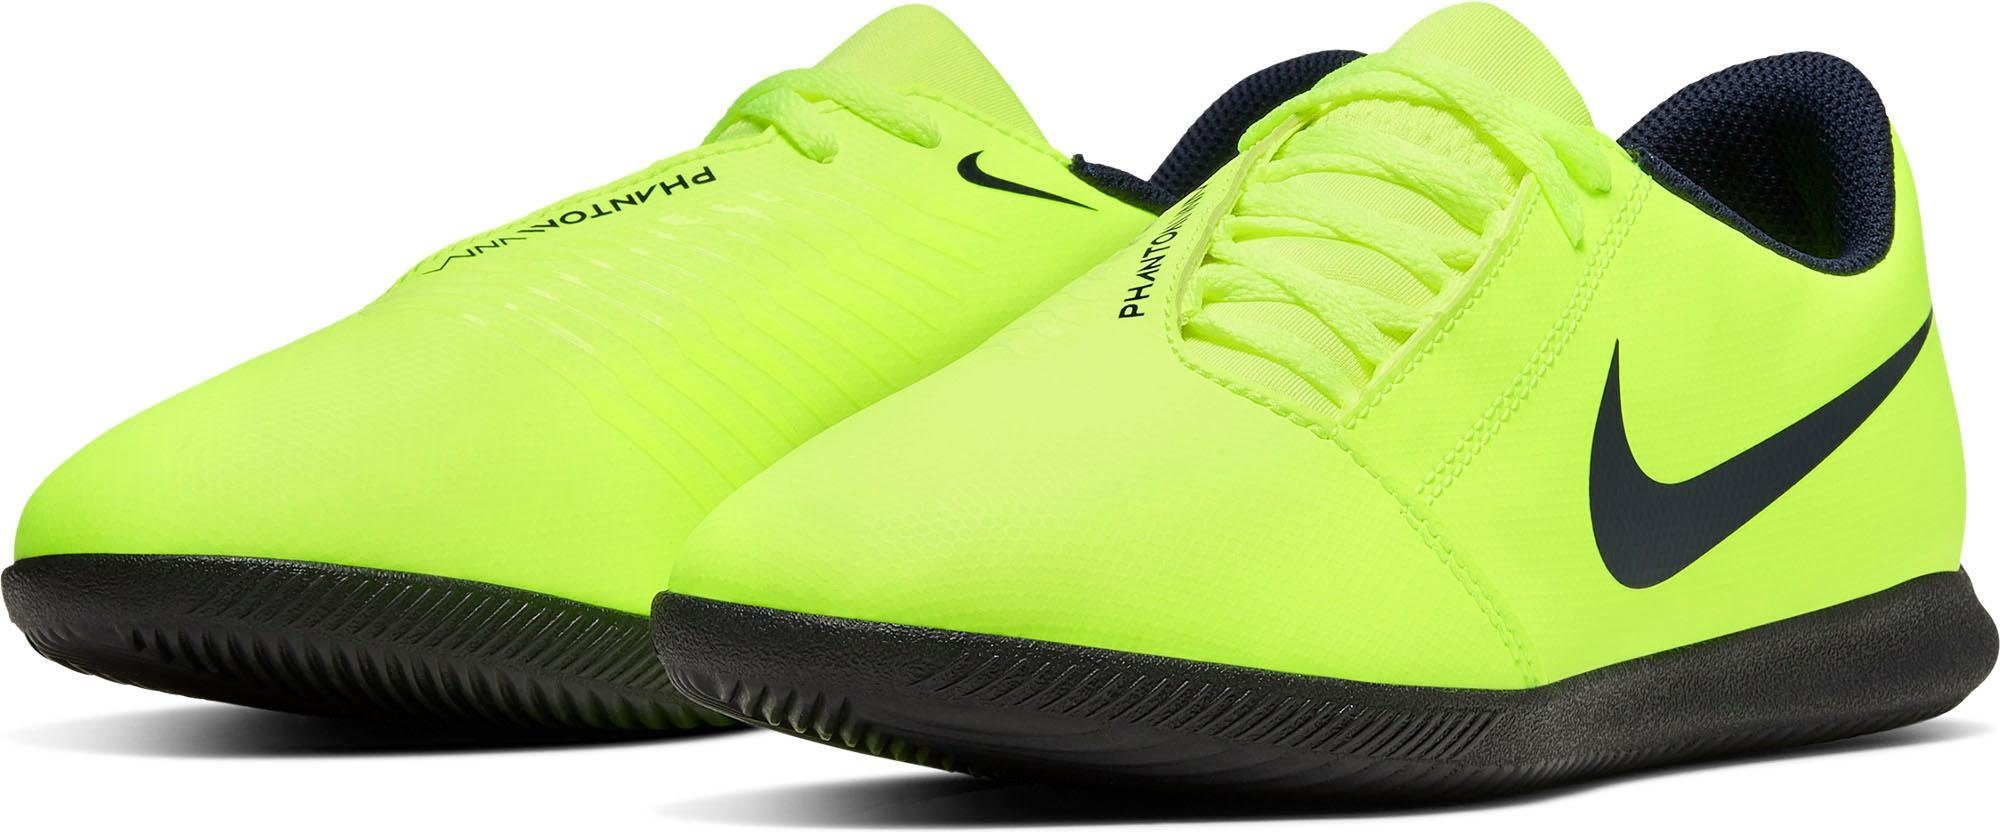 Nike Hypervenom Phelon 3 FG Size 9 Gray Orange eBay